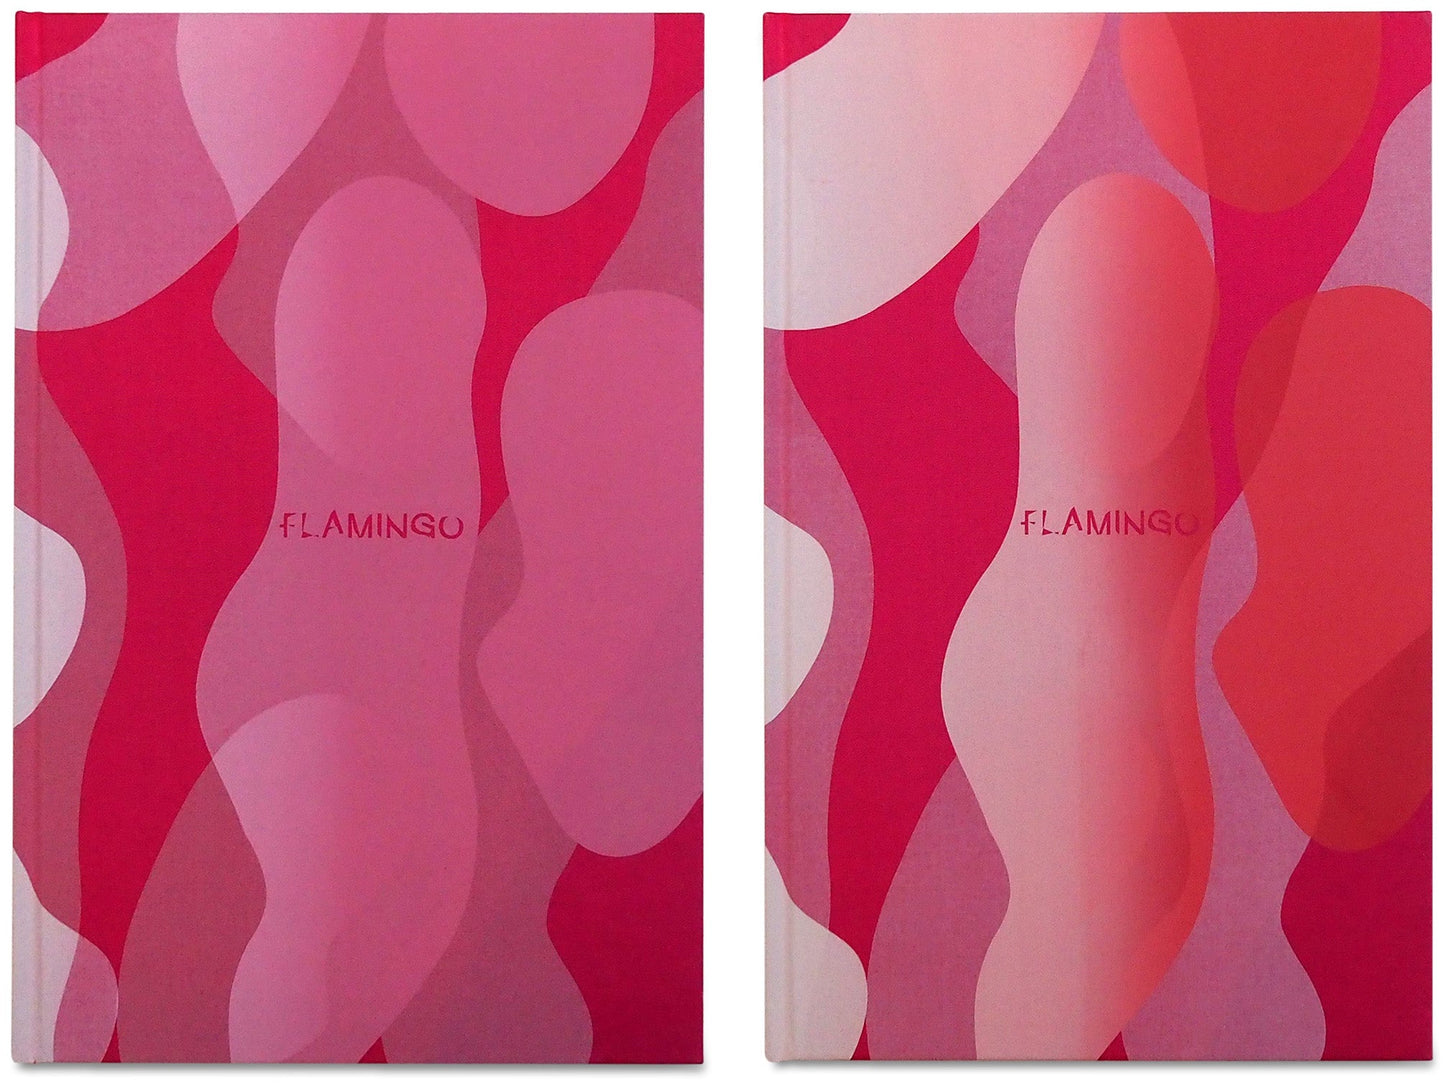 Flamingo - Signed